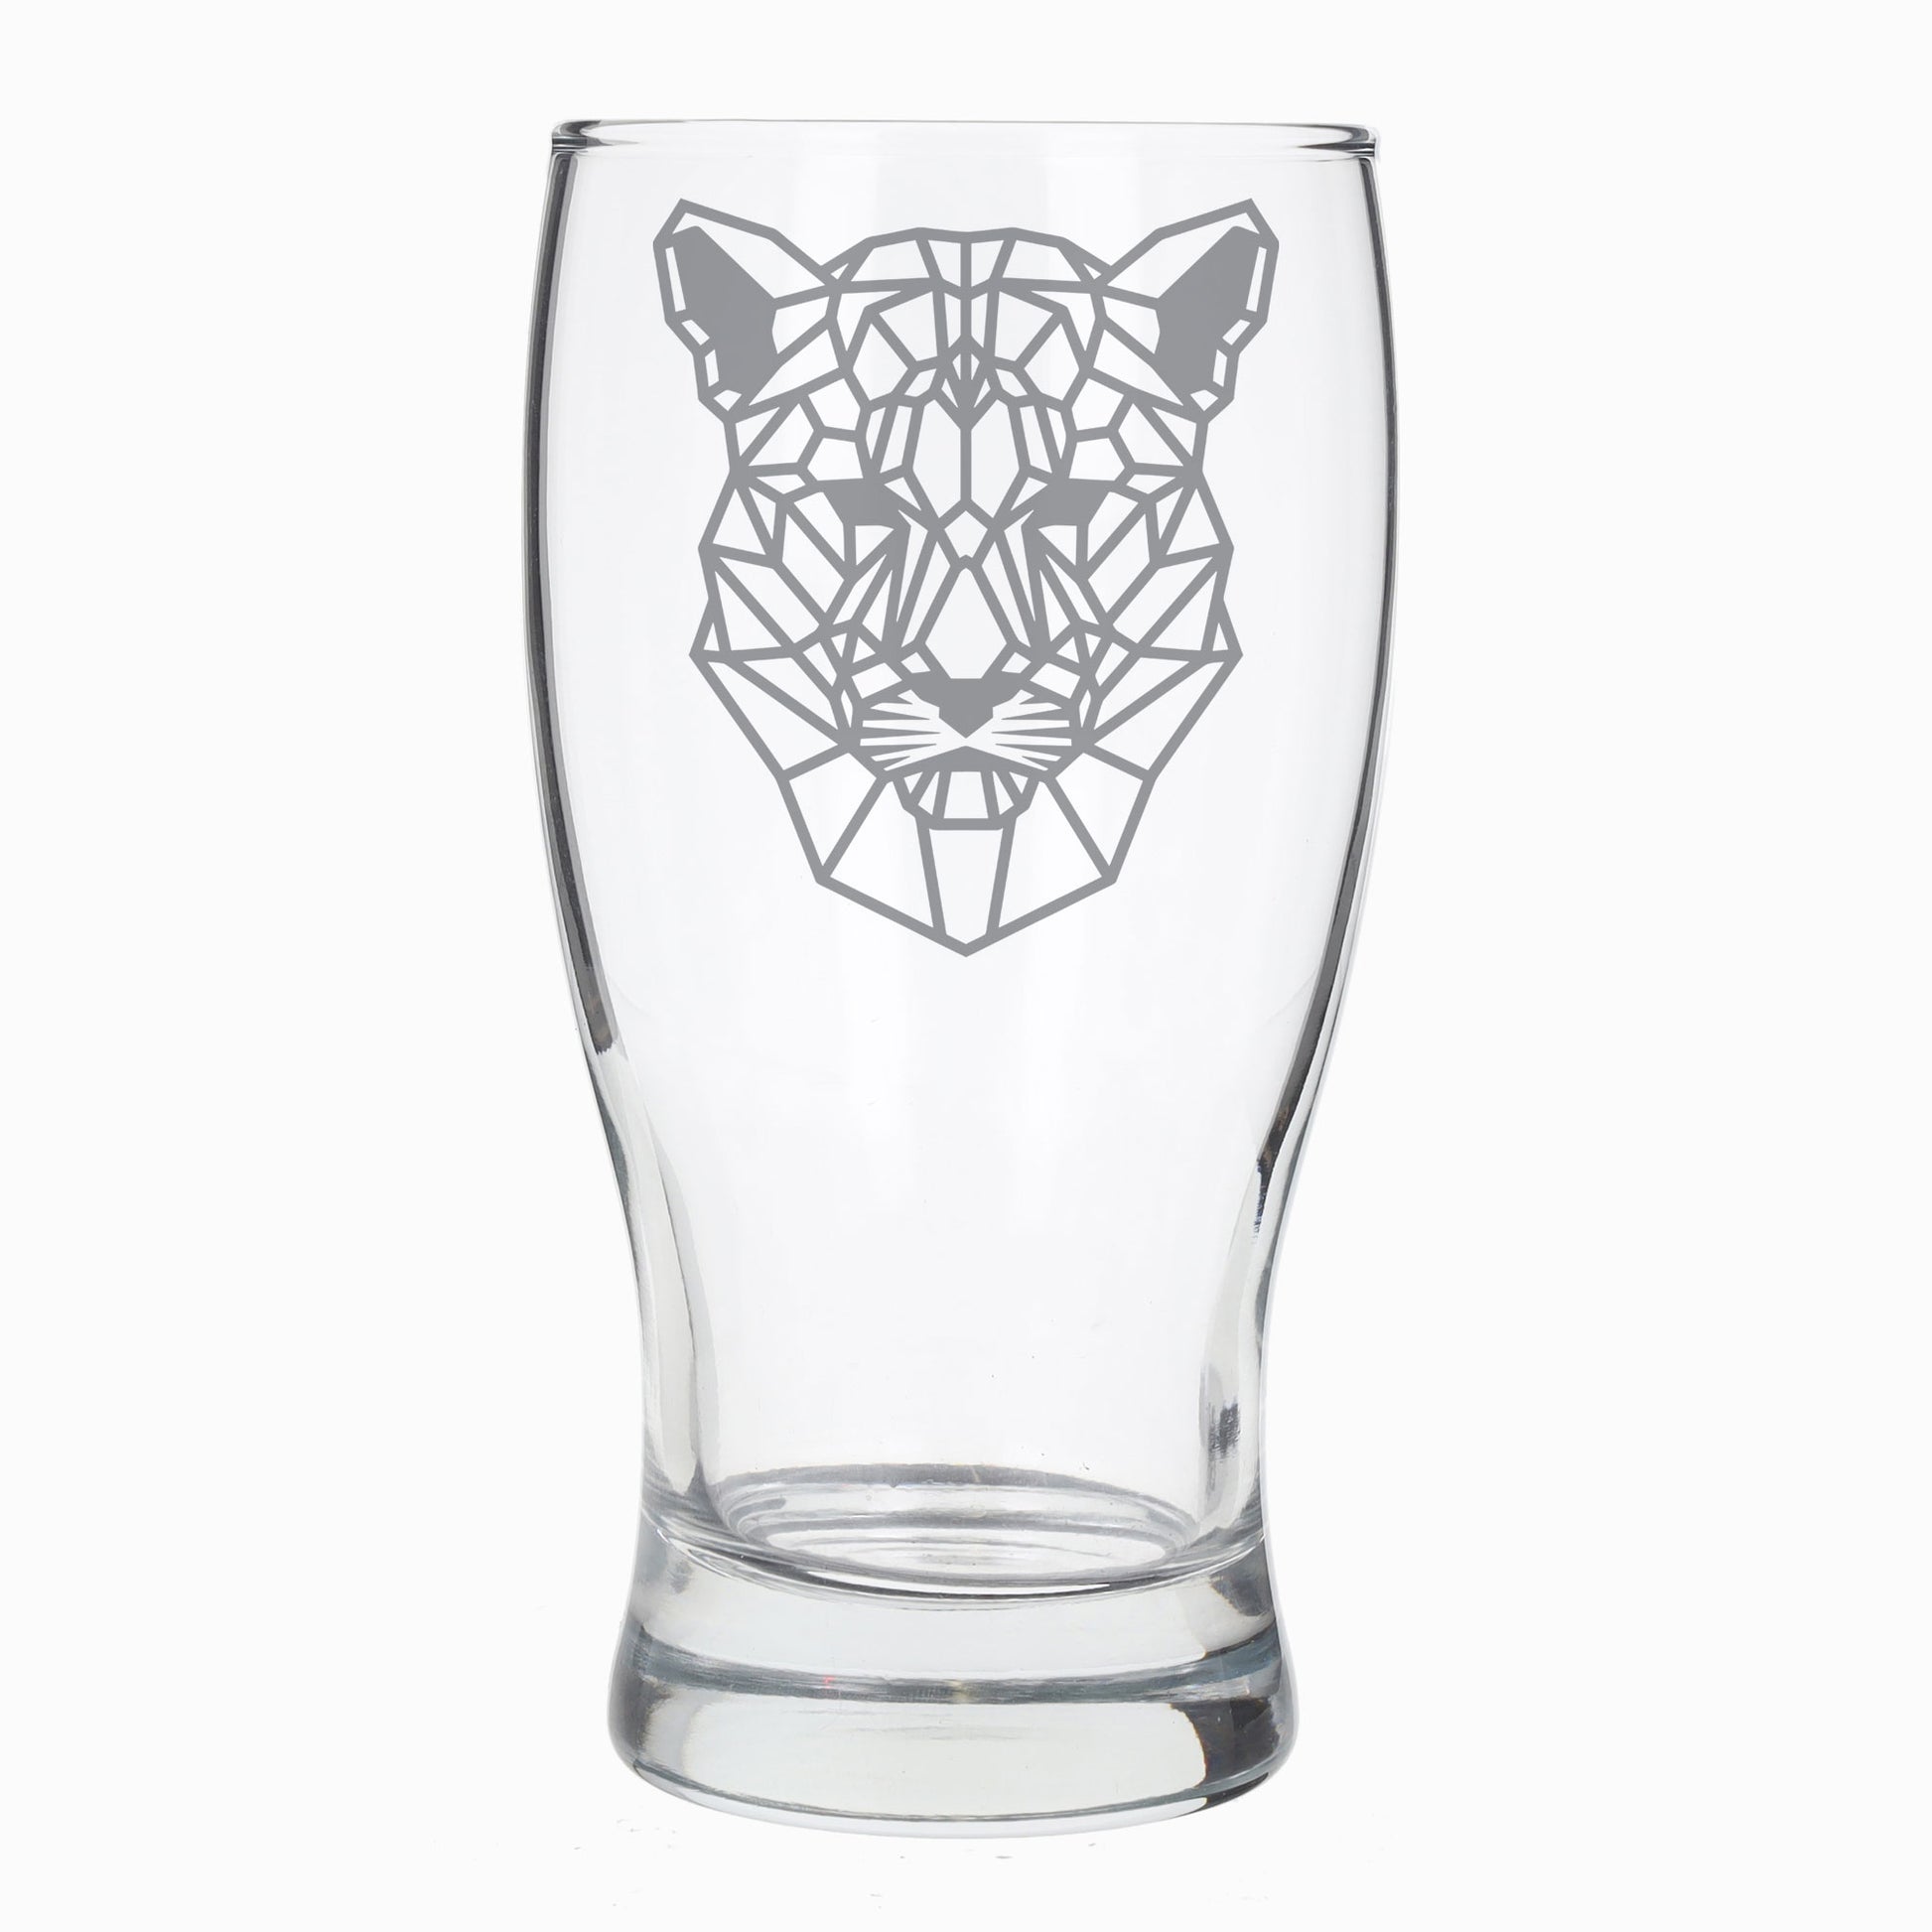 Jaguar Engraved Beer Pint Glass  - Always Looking Good -   